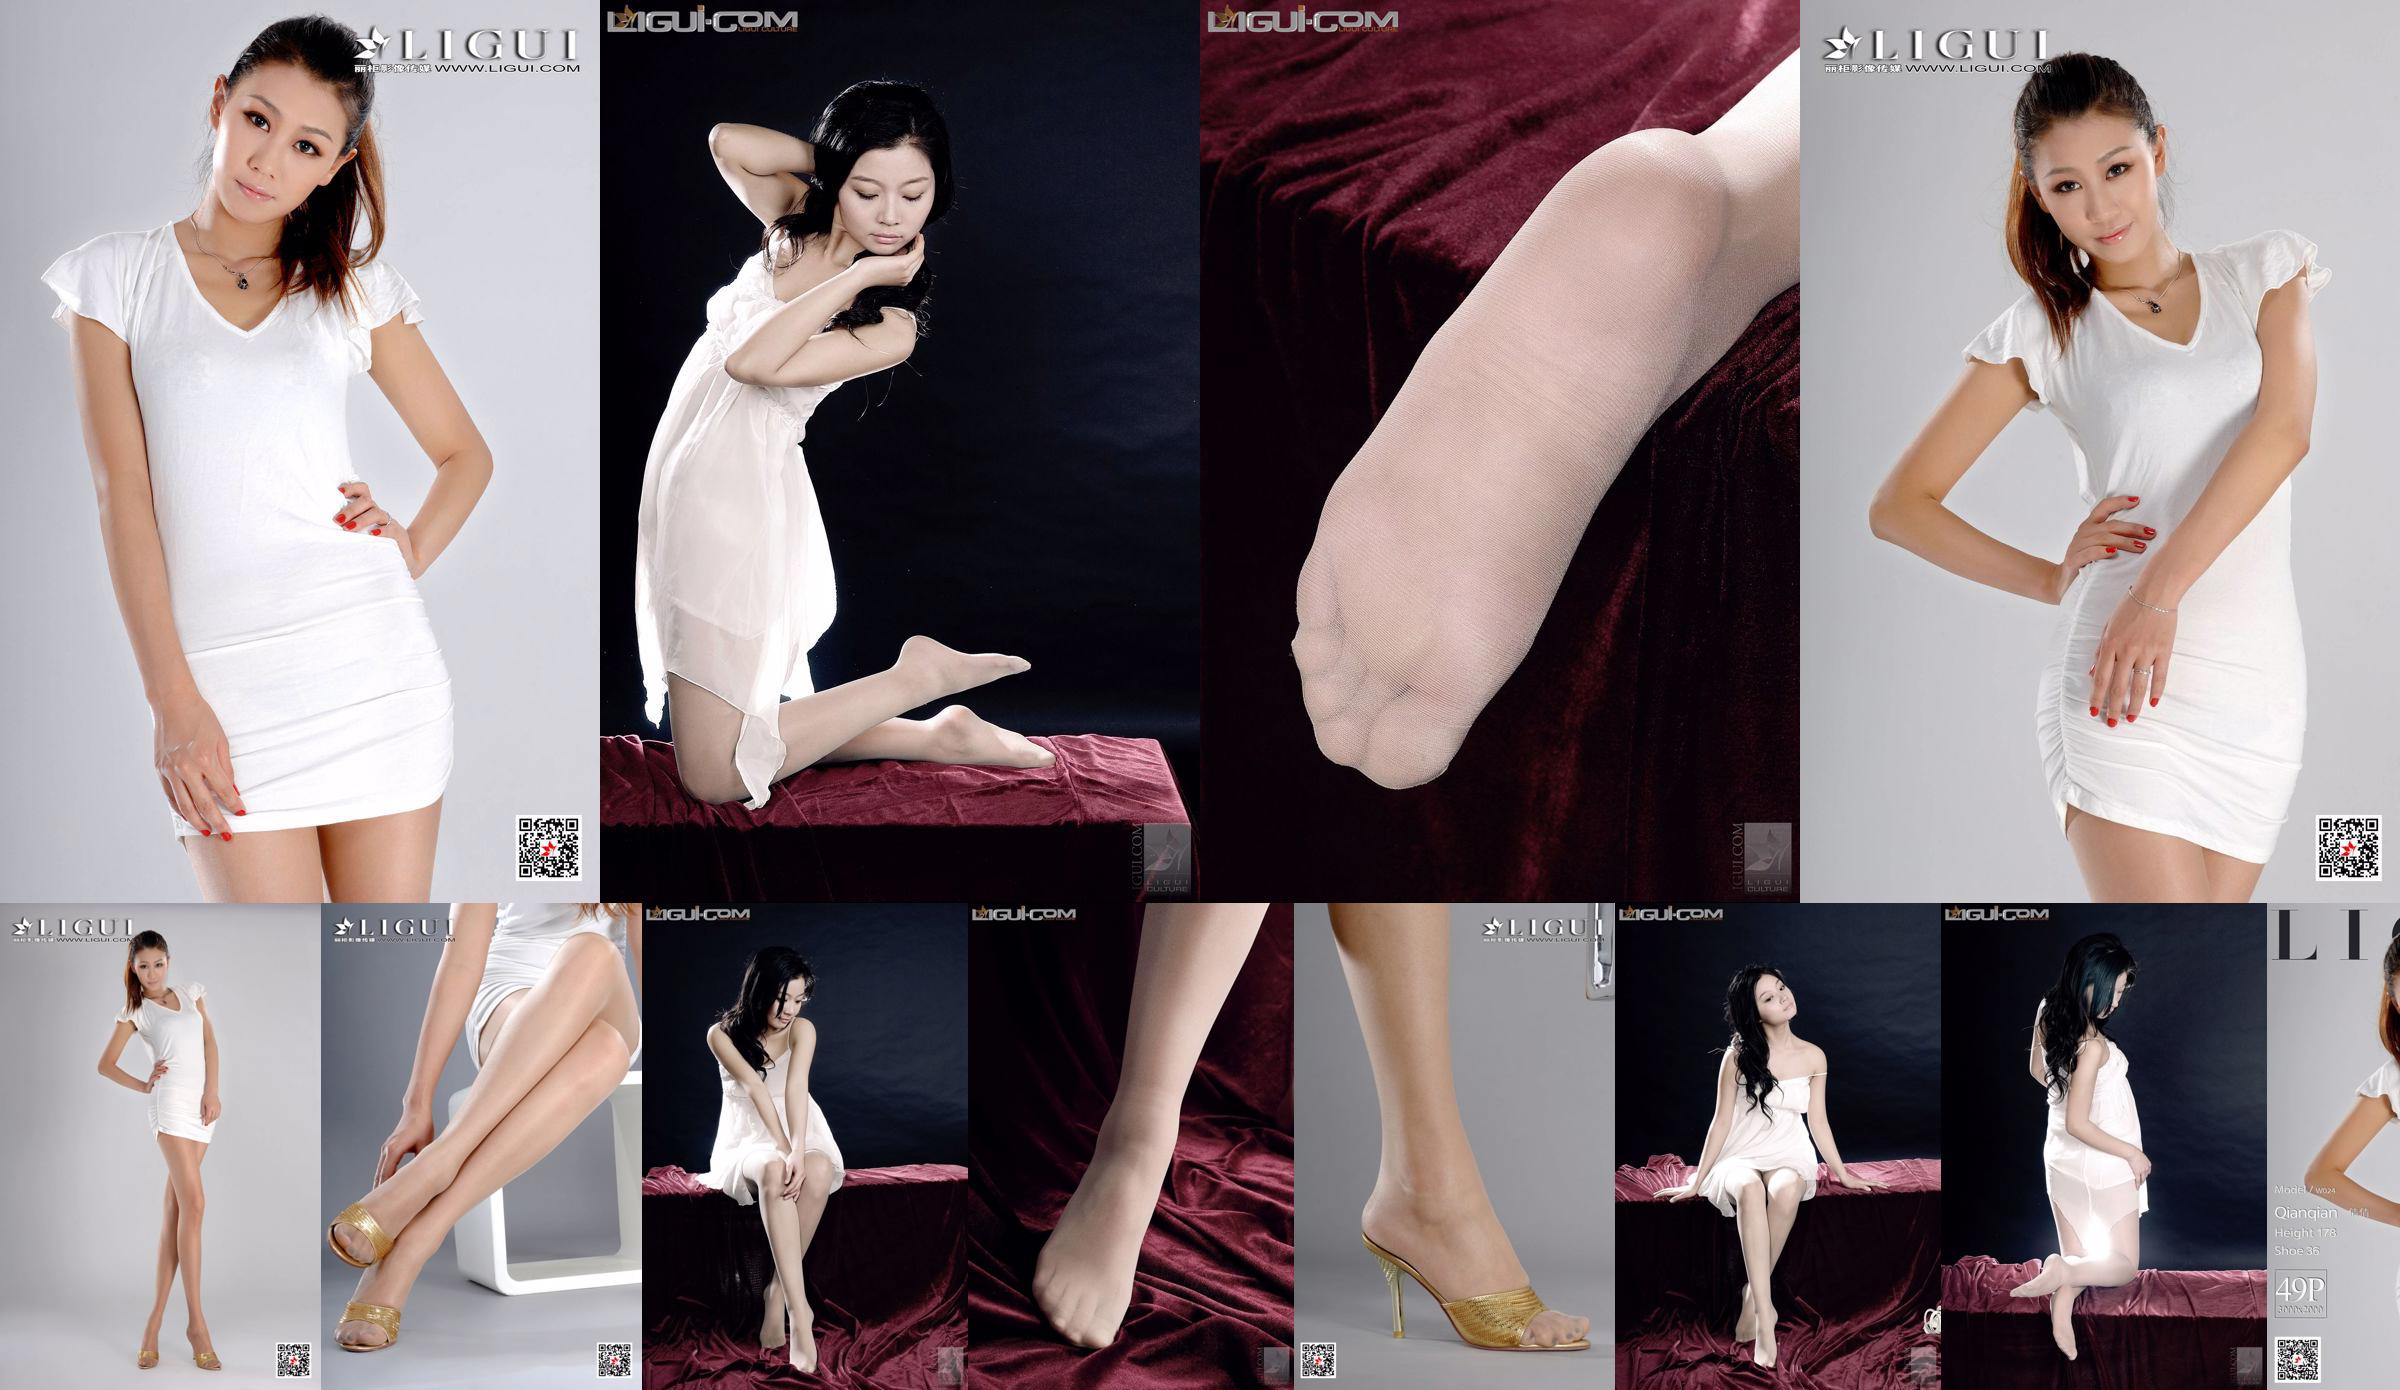 Modèle Qianqian "Fille froide et belle" [丽 柜 LiGui] Photo de pied de soie Image No.7ffee4 Page 10